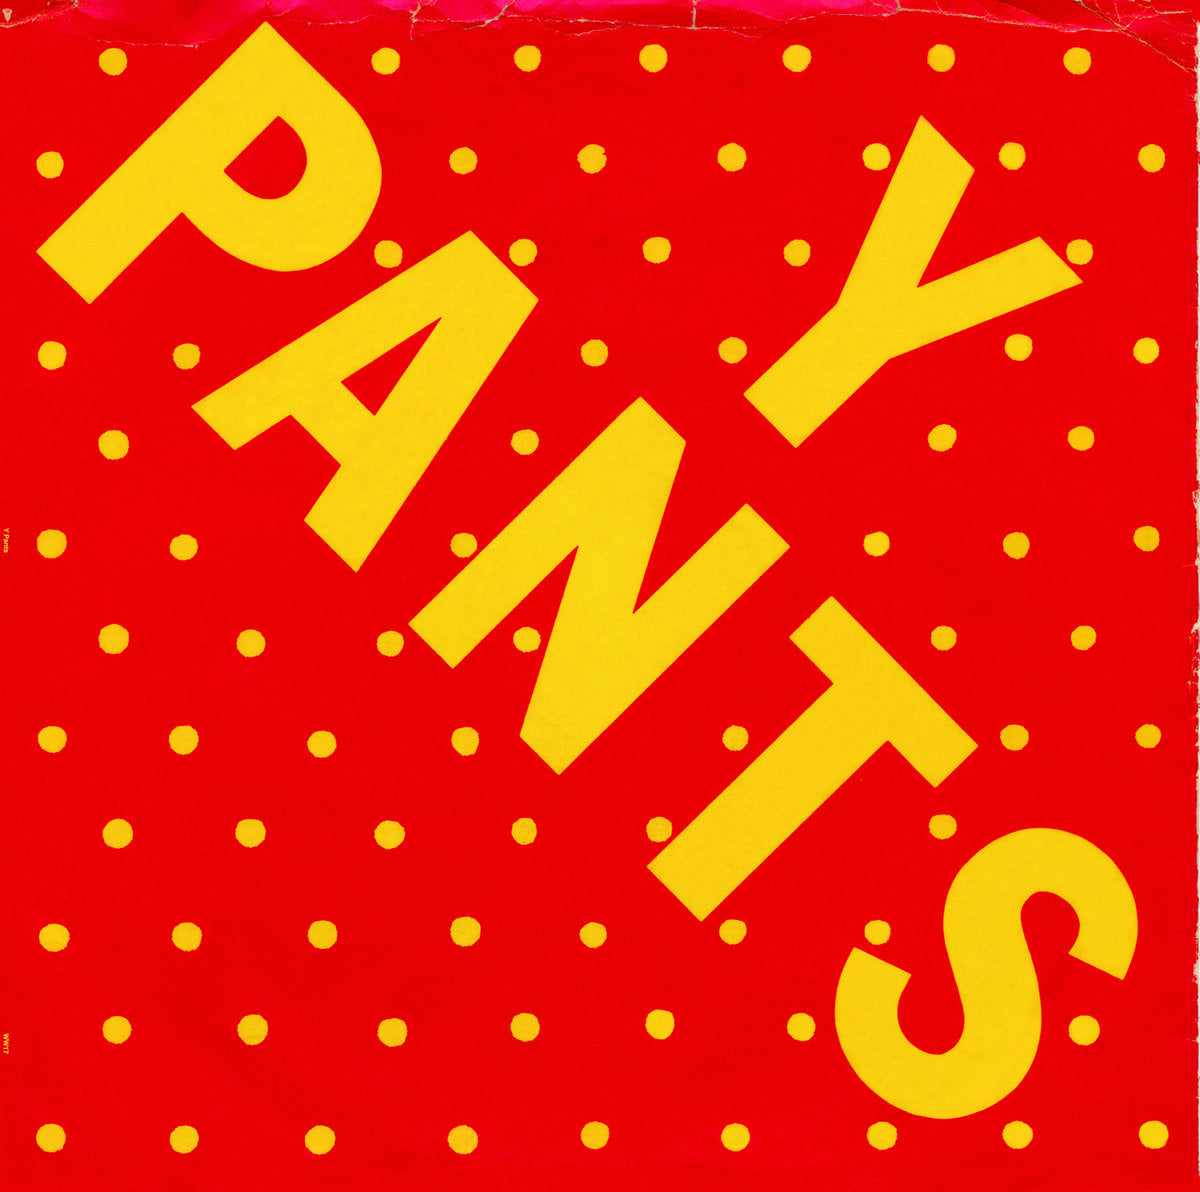 Y PANTS - 6 SONG EP Vinyl 12"